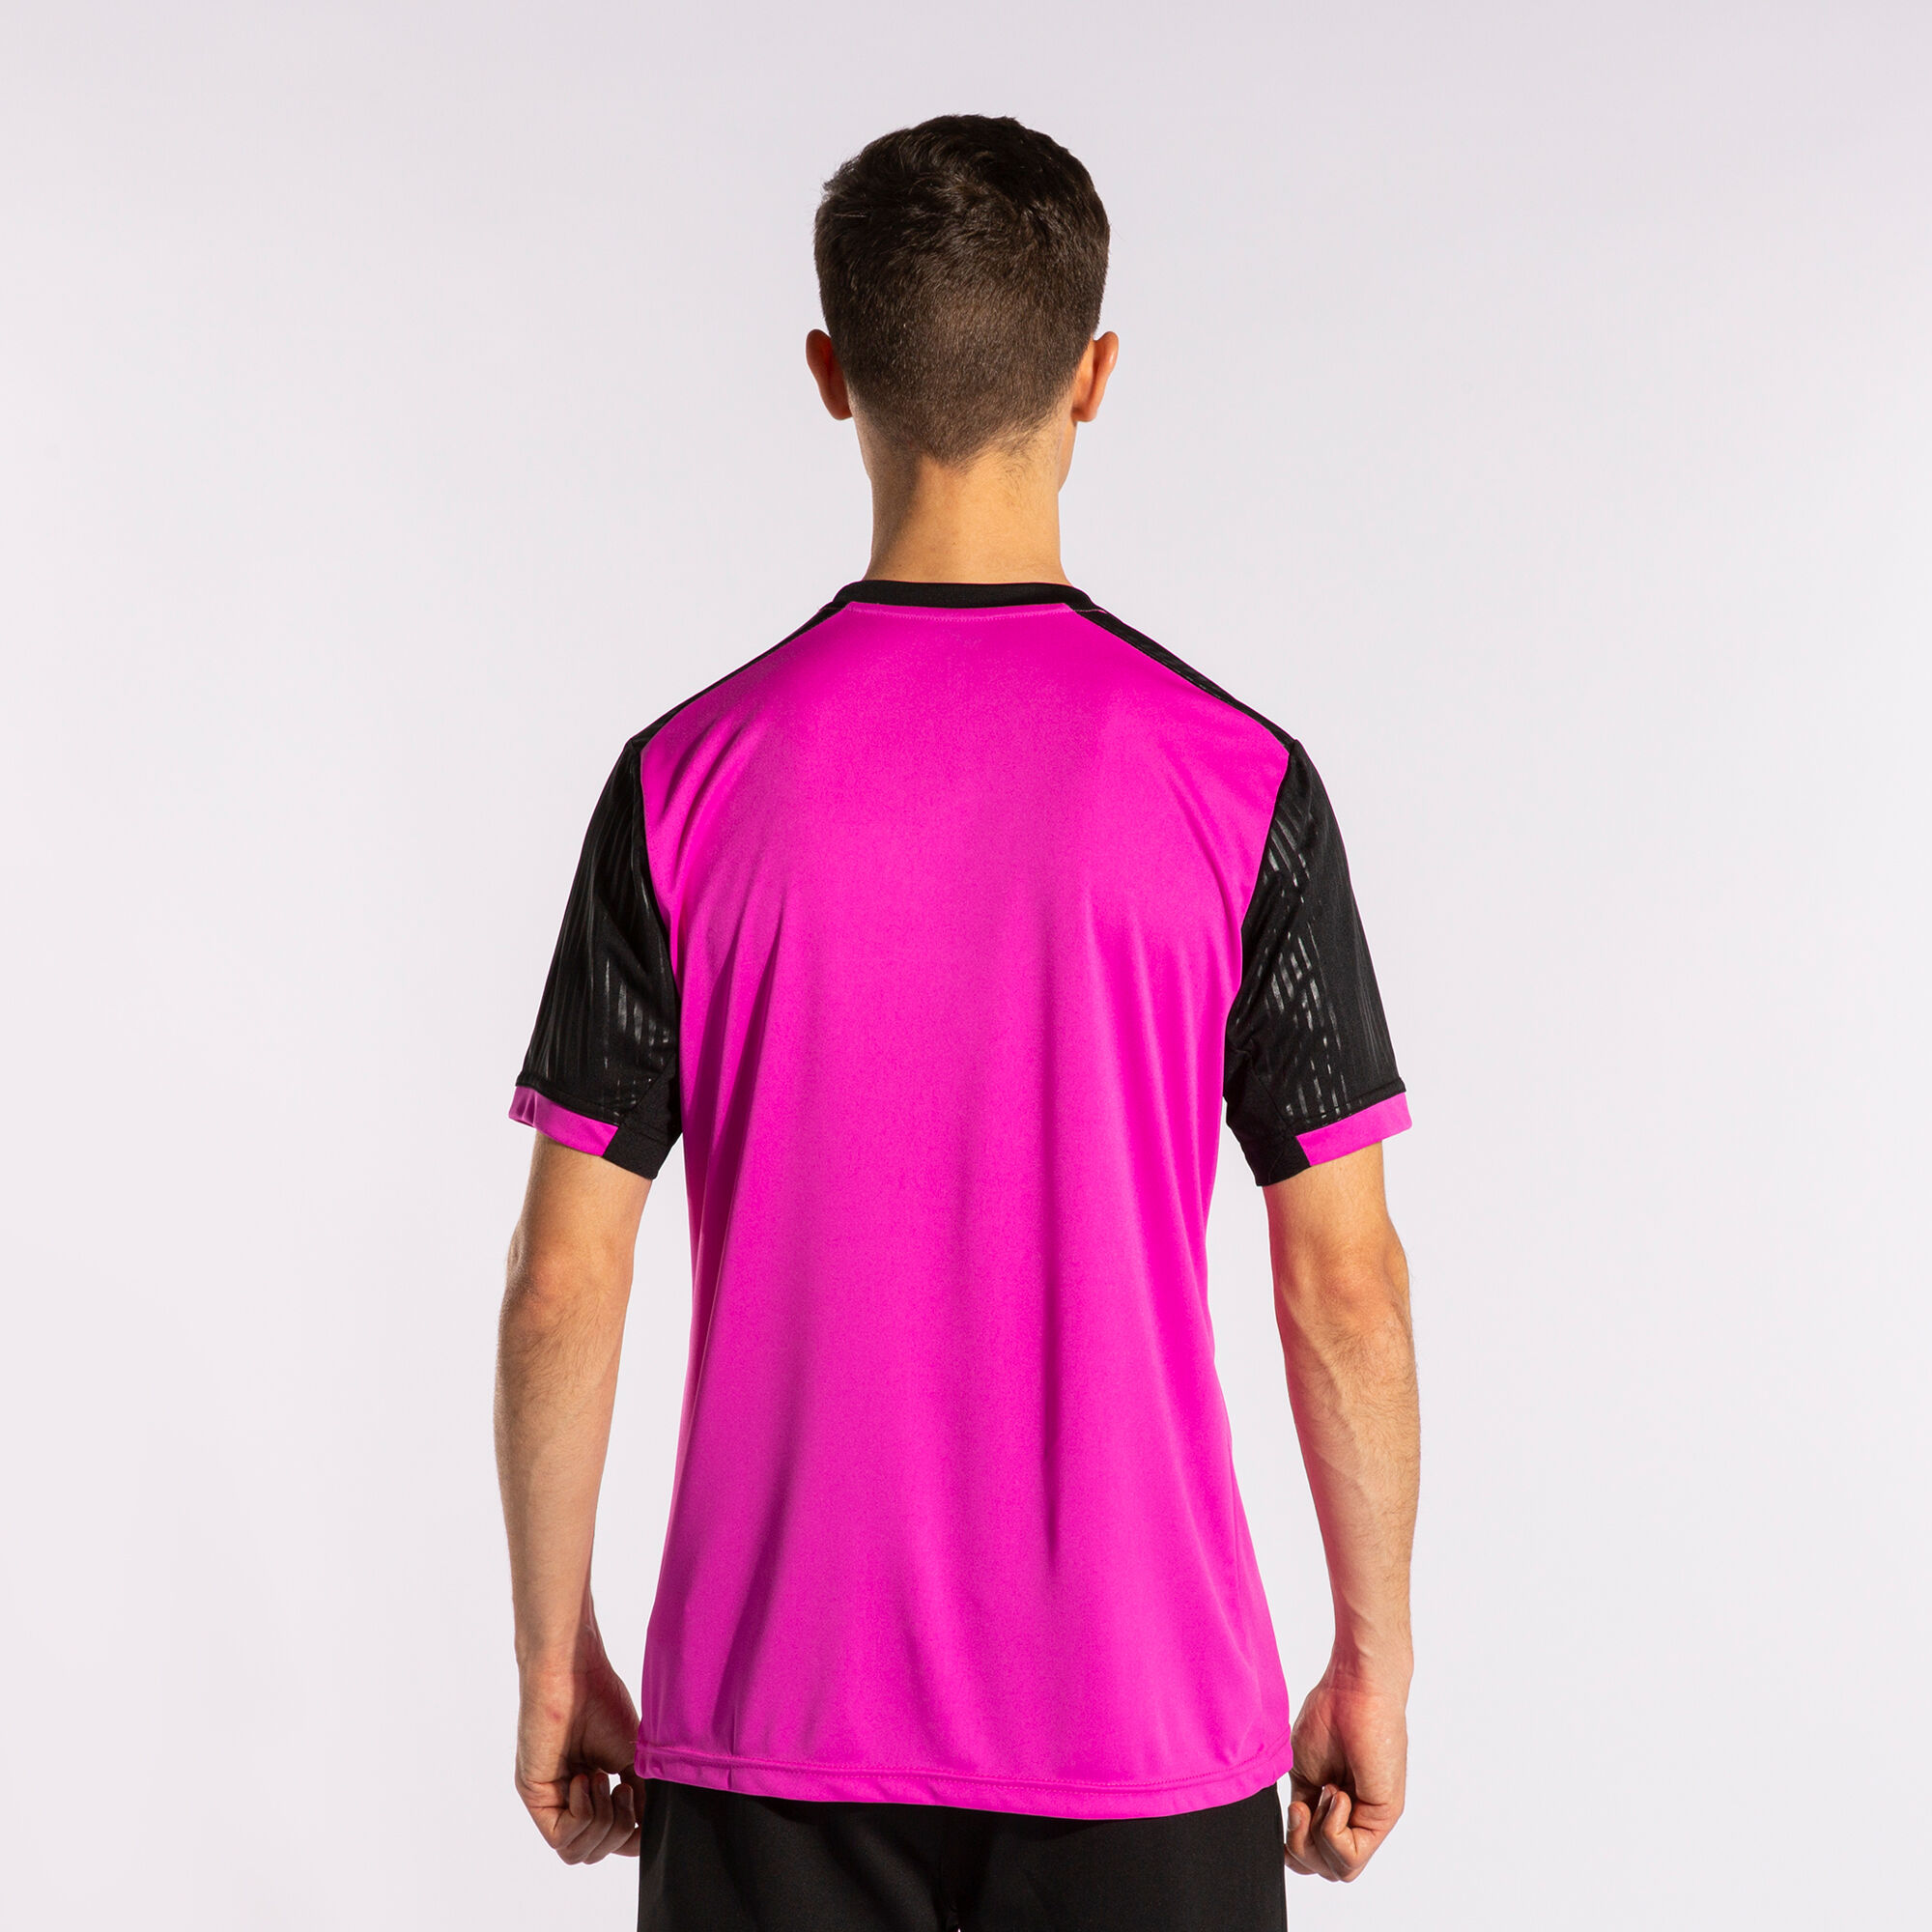 Shirt short sleeve man Montreal fluorescent pink black